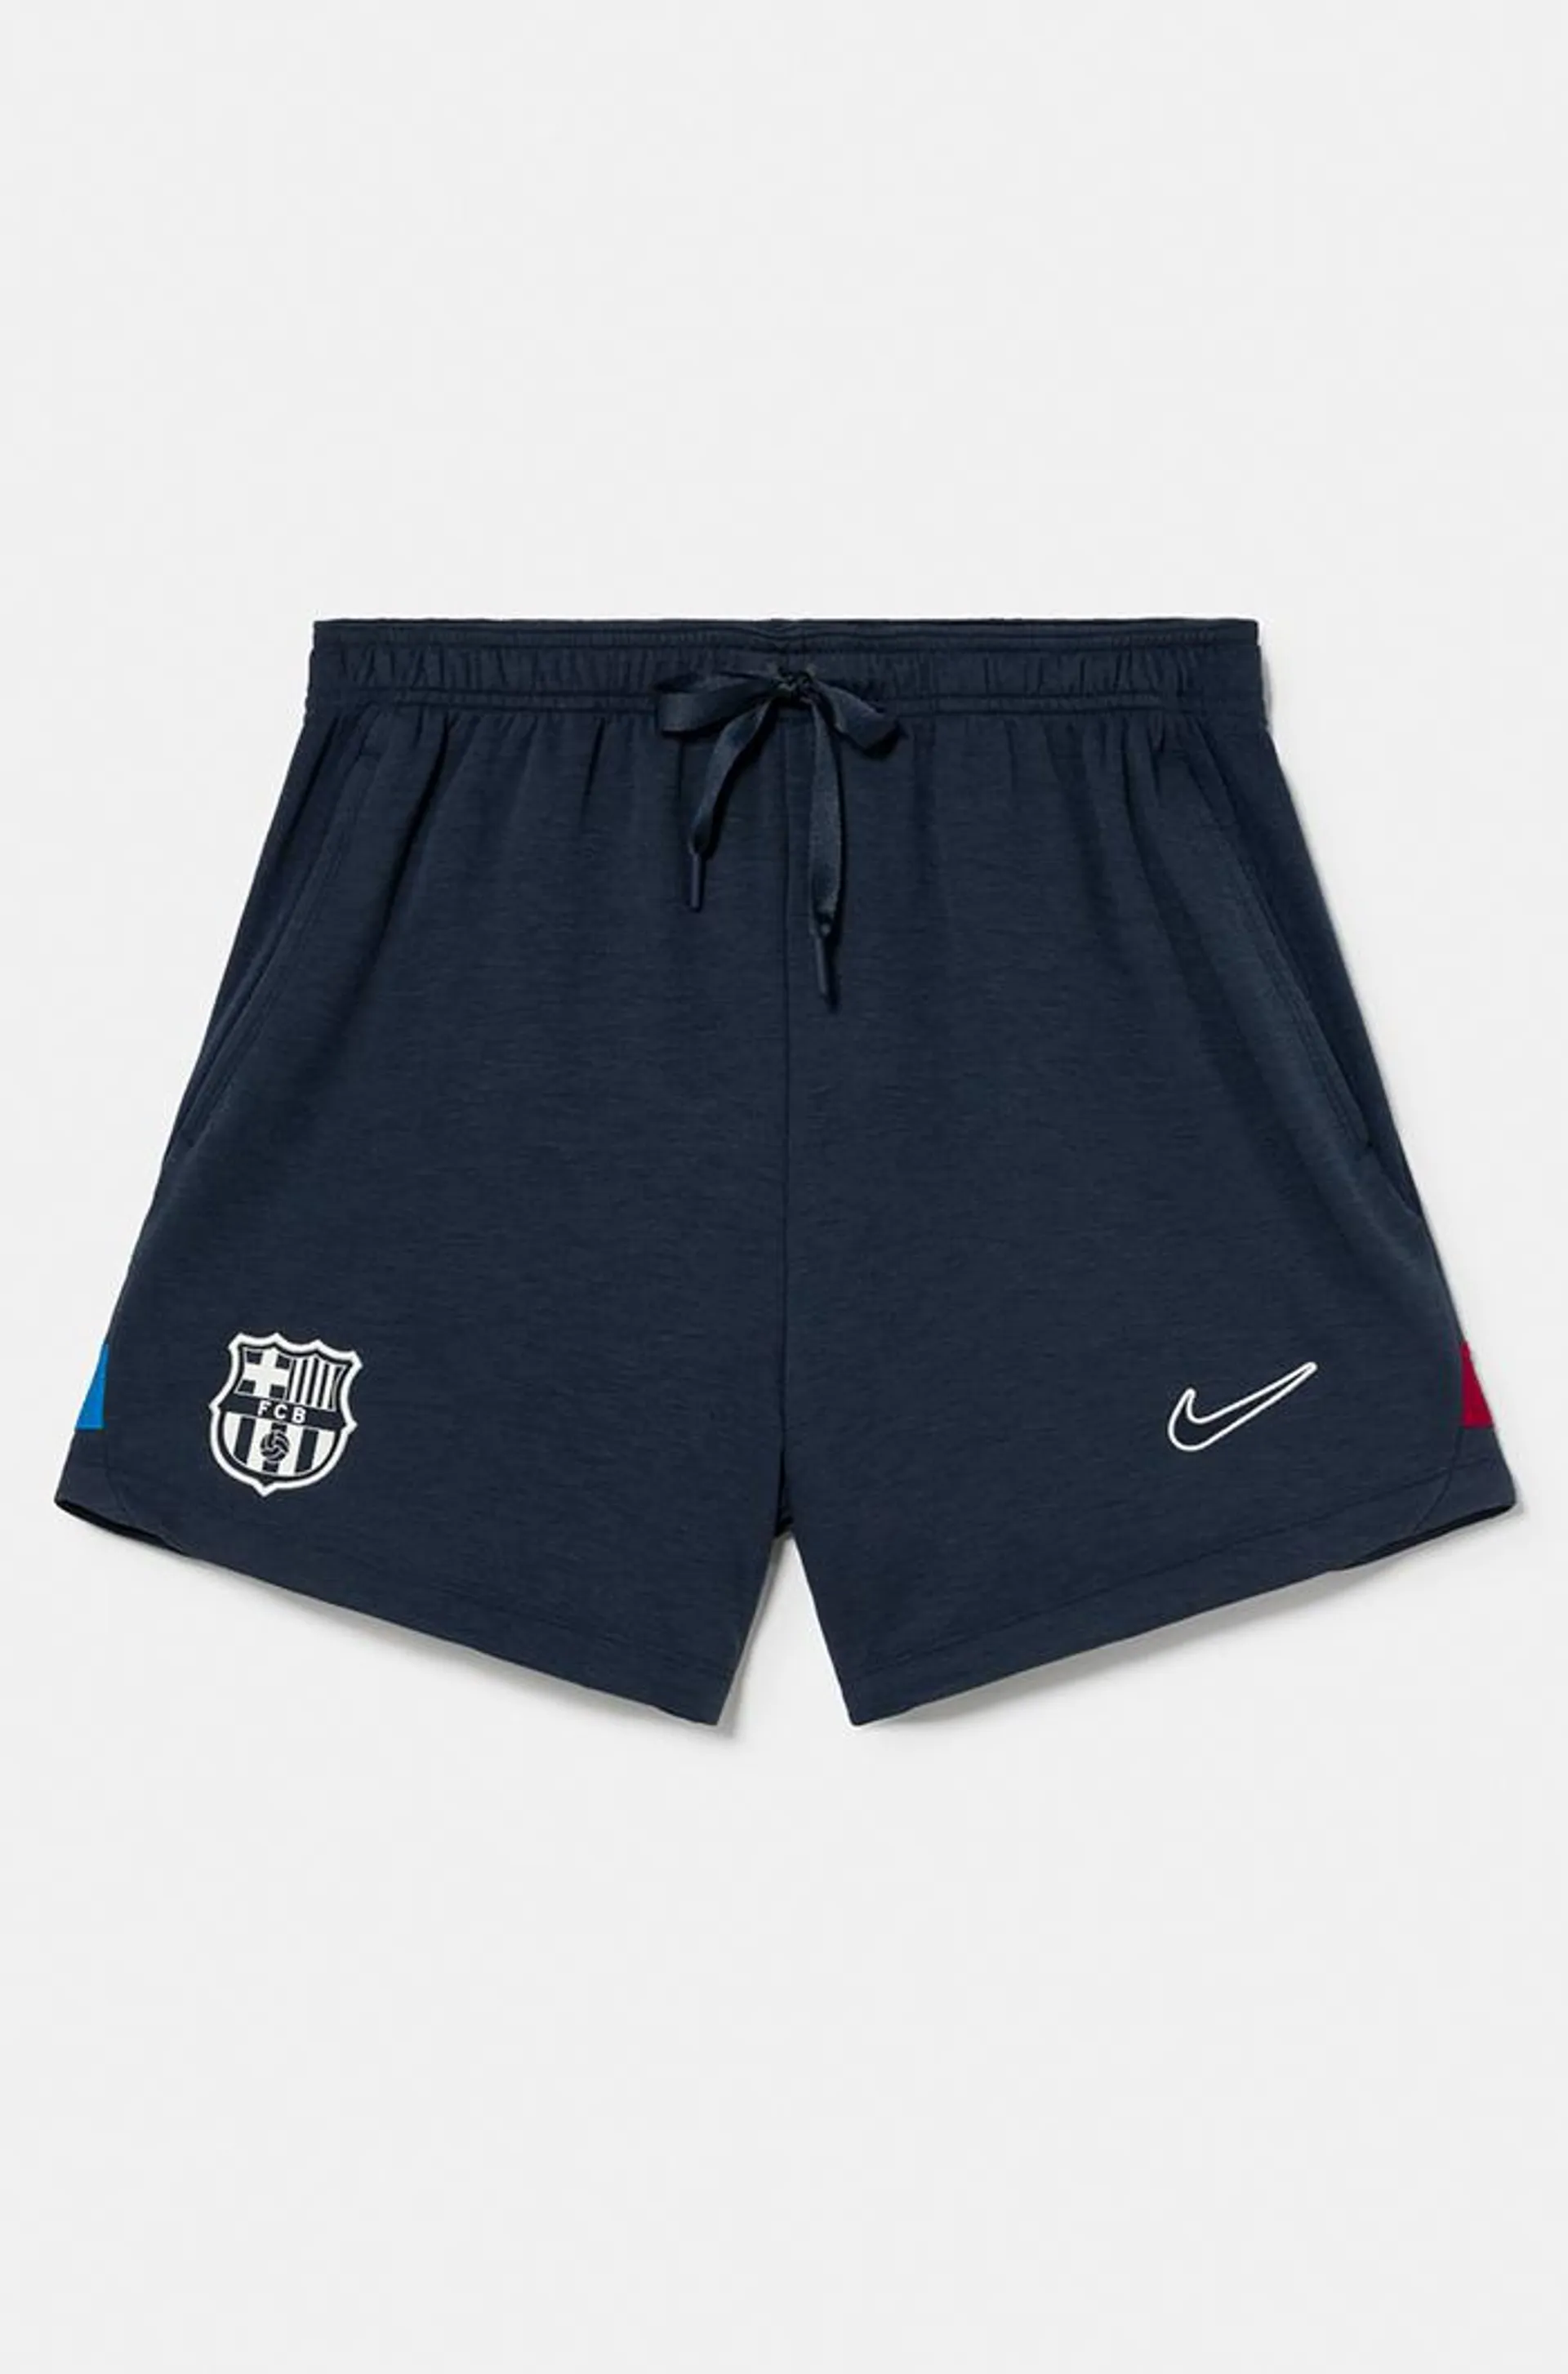 Pantalones cortos Barça Nike - Mujer